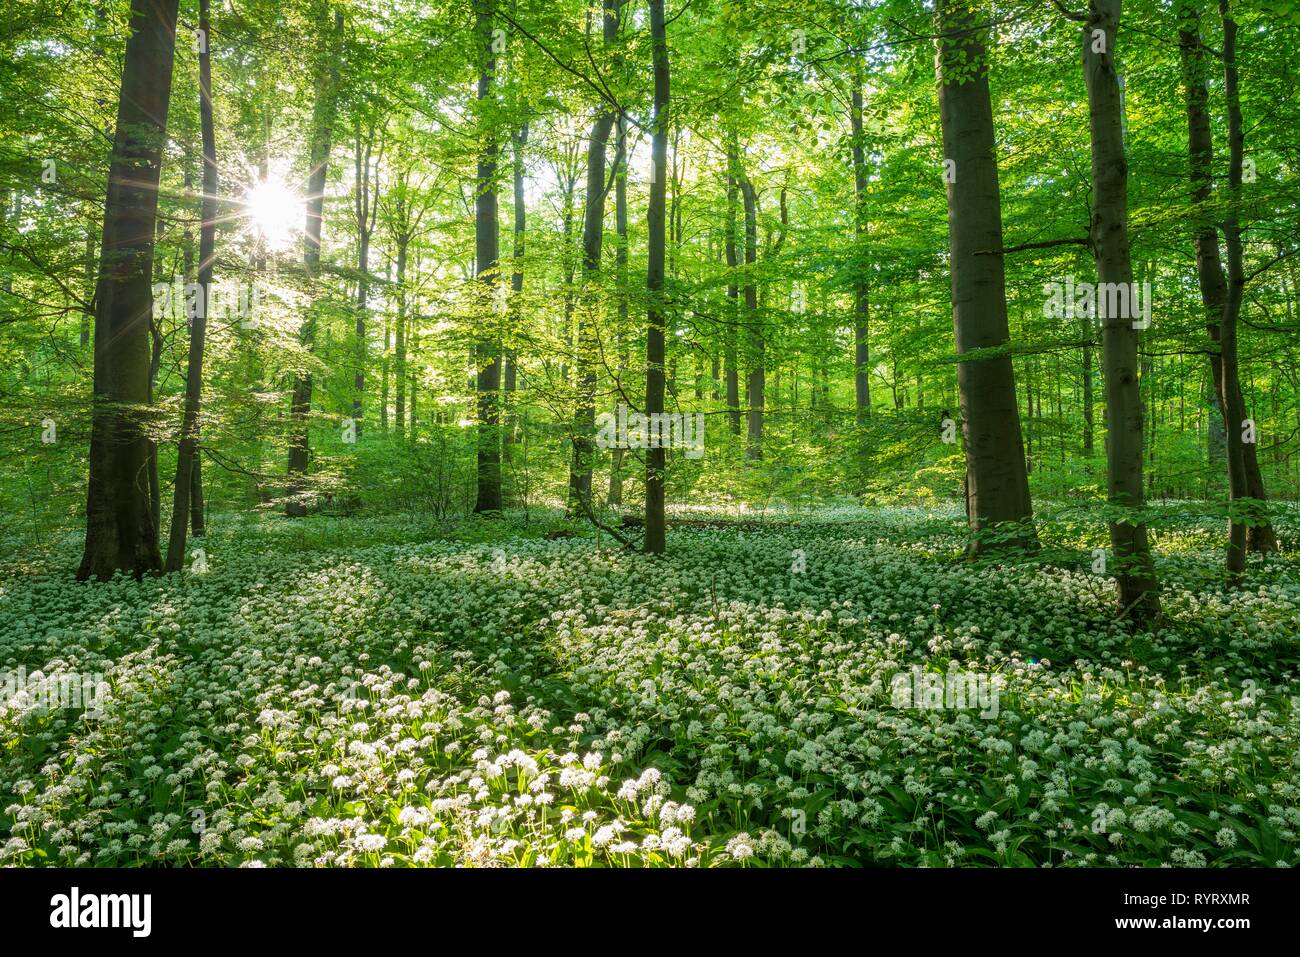 Forêt de hêtre commun (Fagus sylvatica) avec la floraison Ramsom (Allium ursinum), Parc national du Hainich, Thuringe, Allemagne Banque D'Images